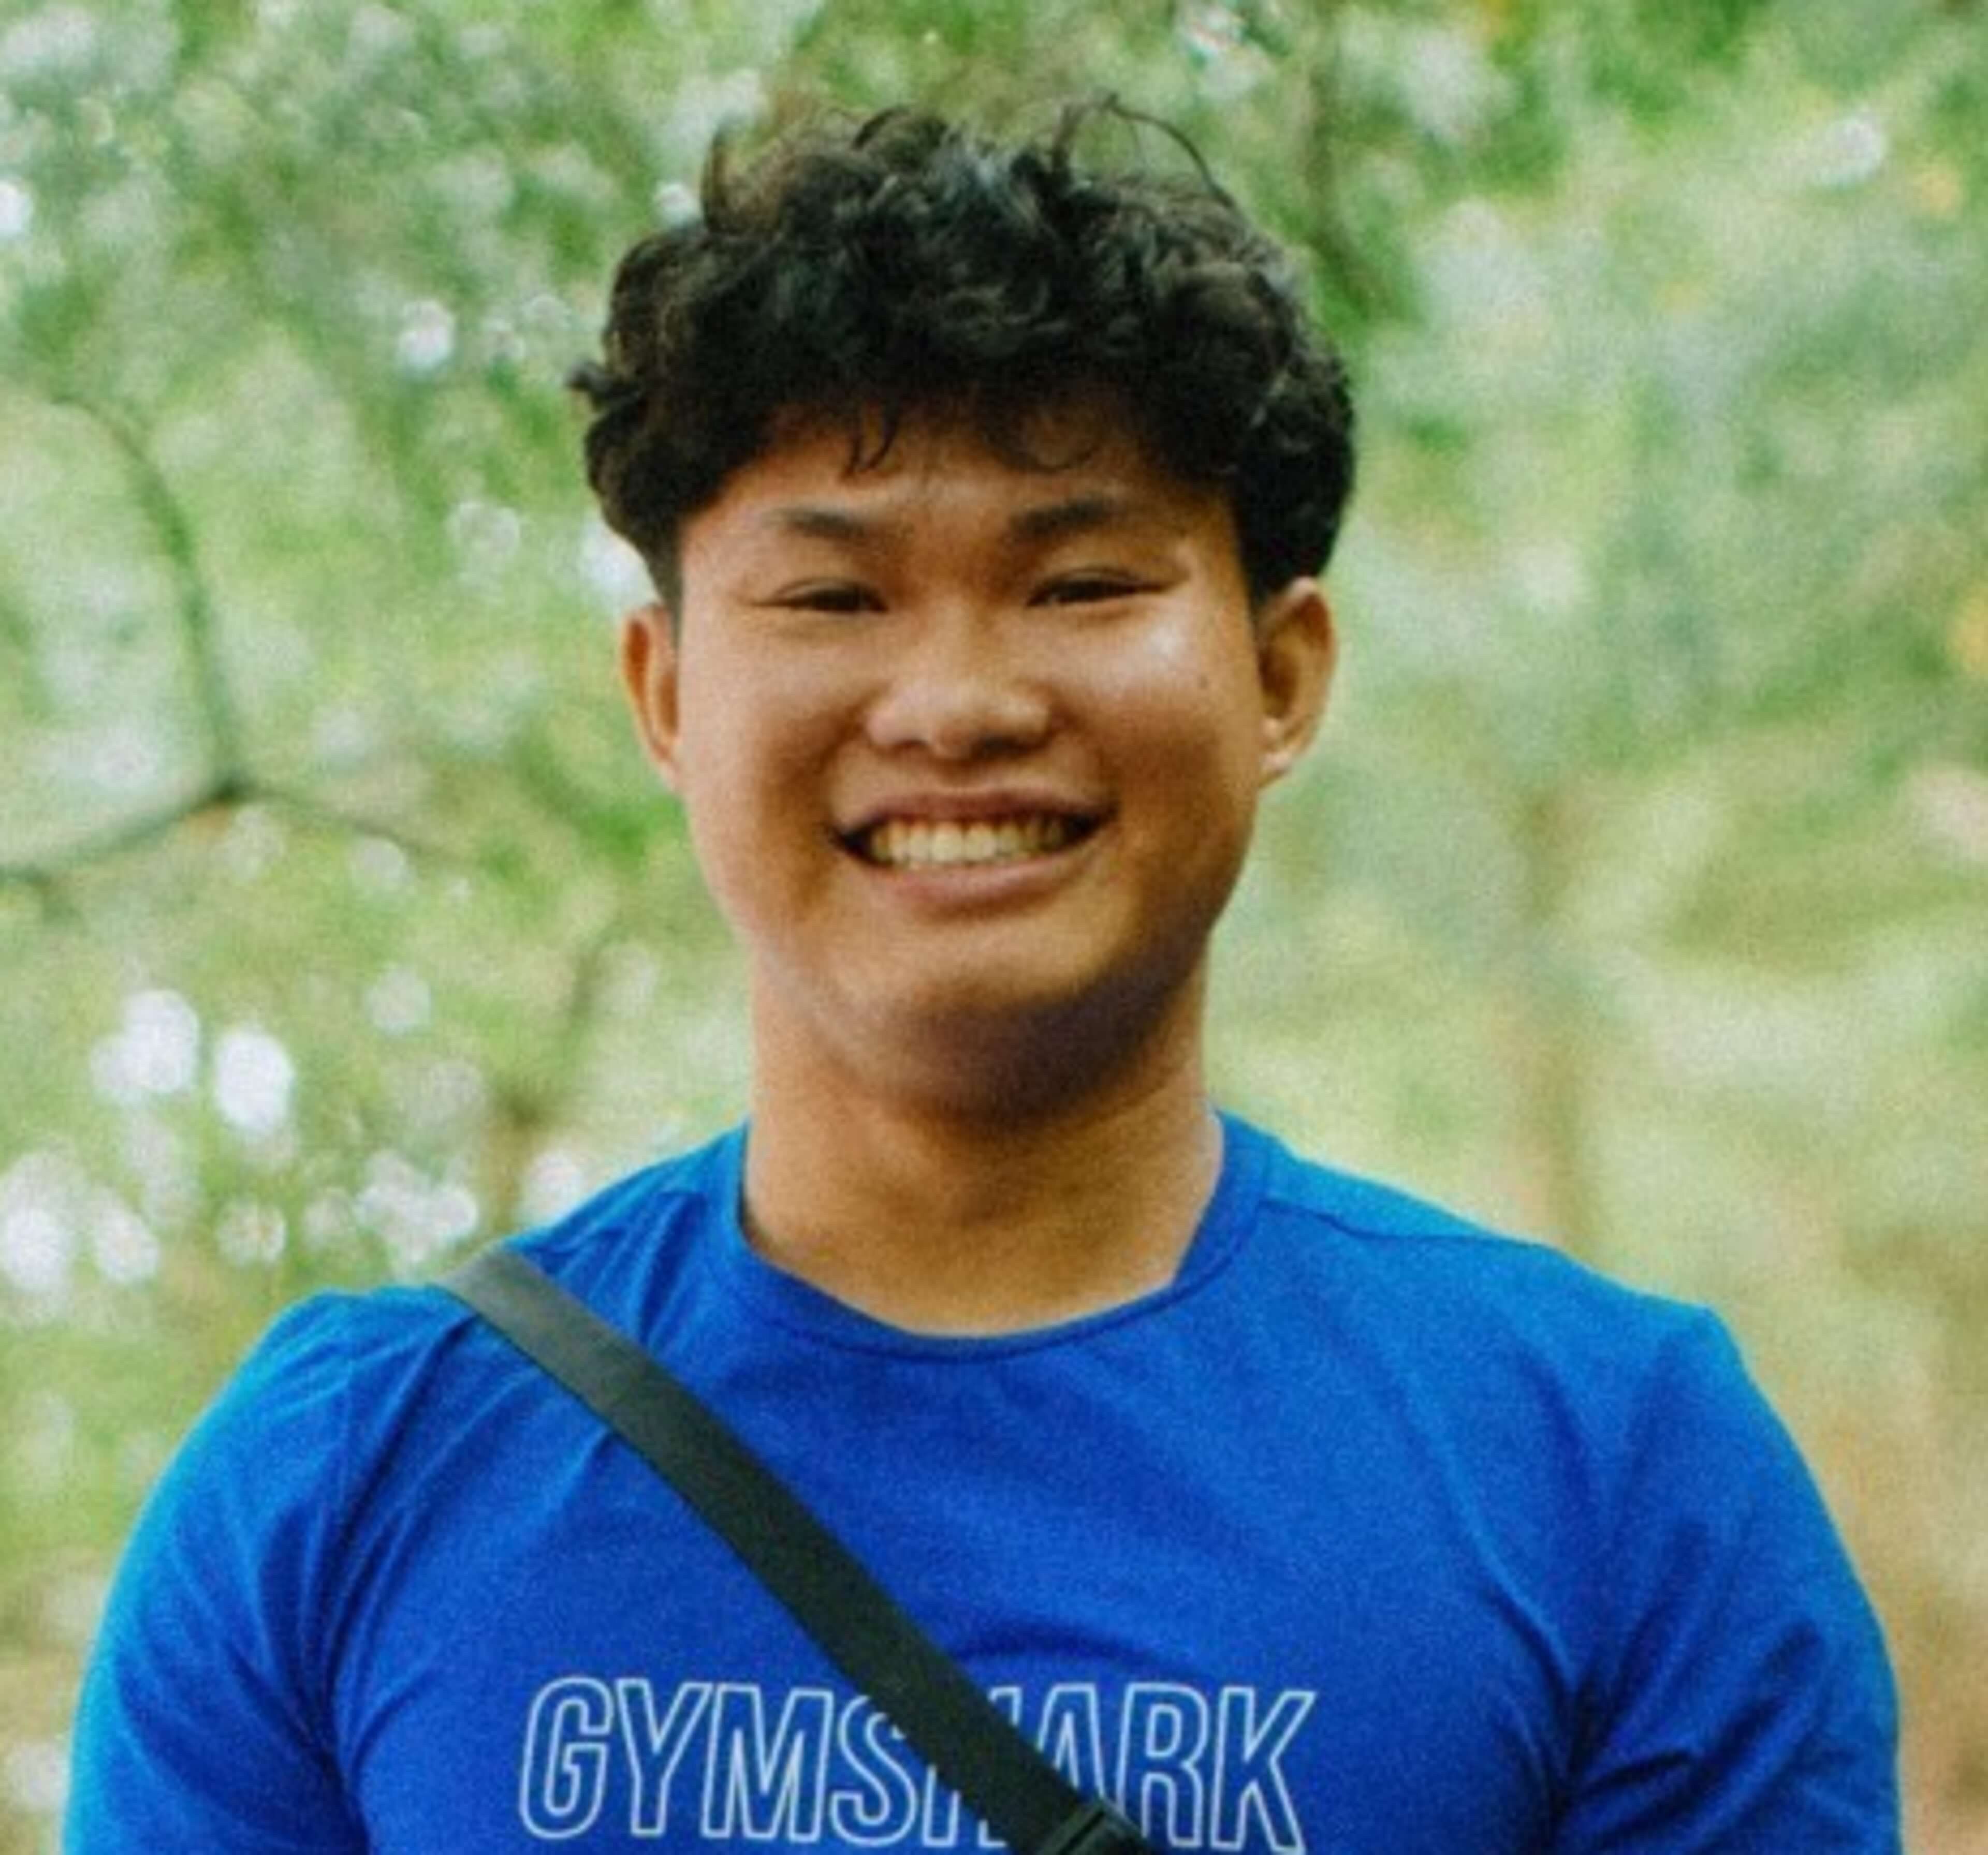 Ian Huang